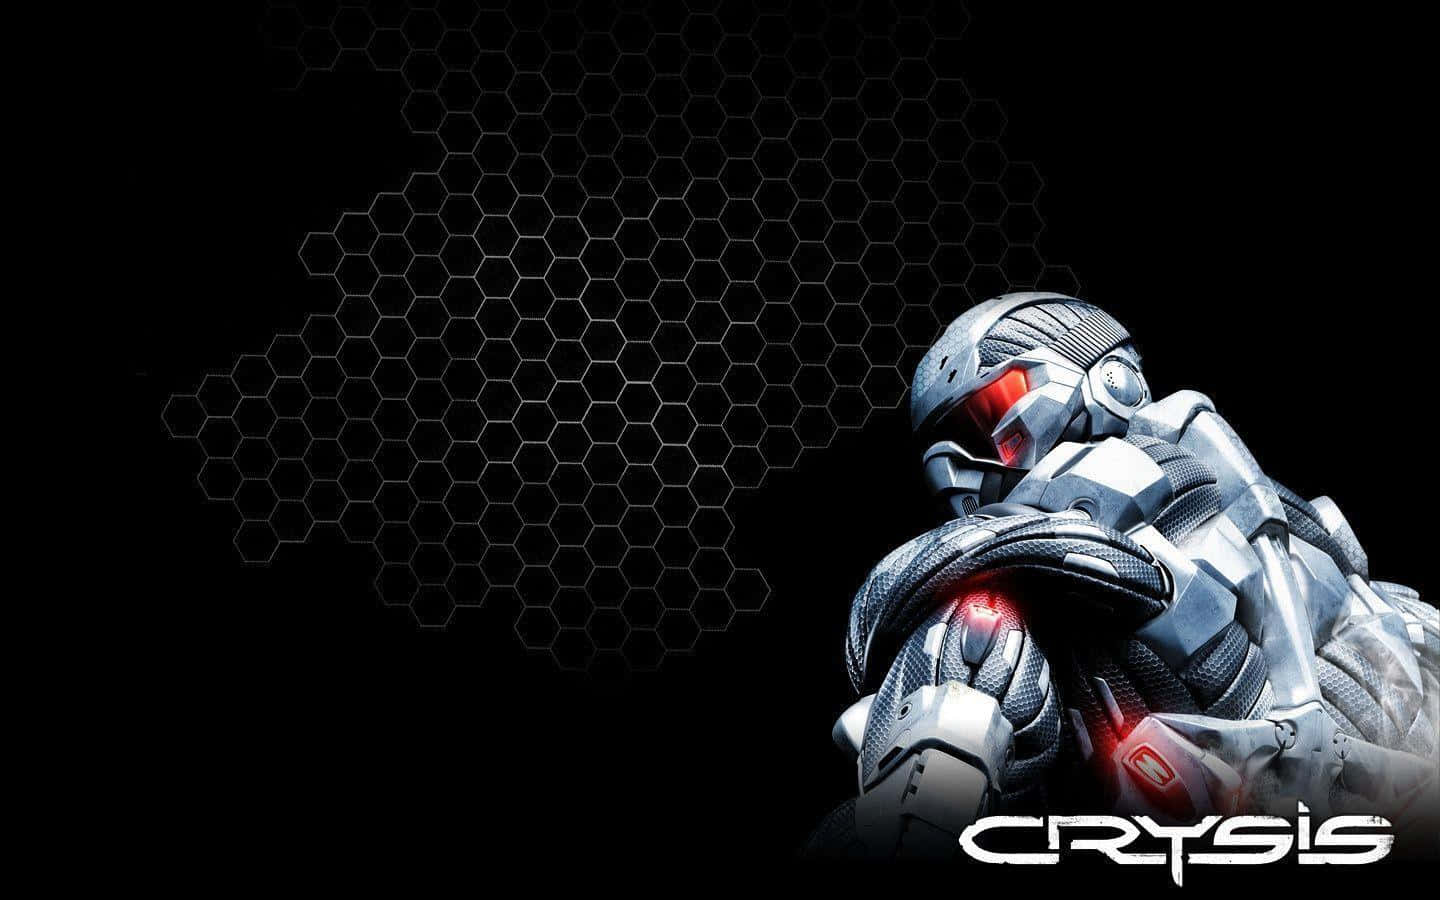 Crysisbakgrundsbilder - Hd-bakgrundsbilder Wallpaper